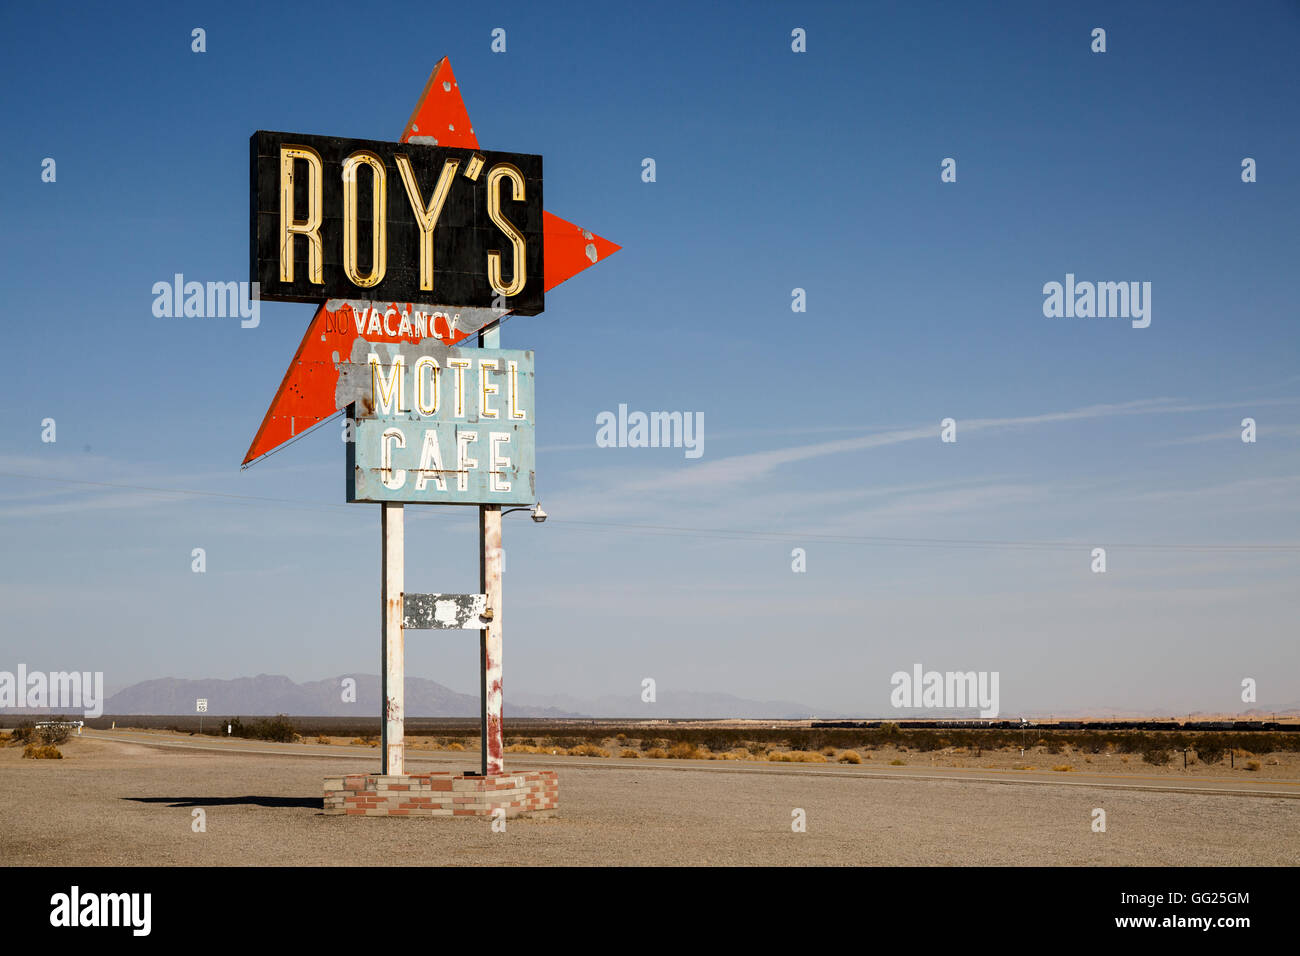 Roy's Motel et Café, Amboy, California, United States Banque D'Images